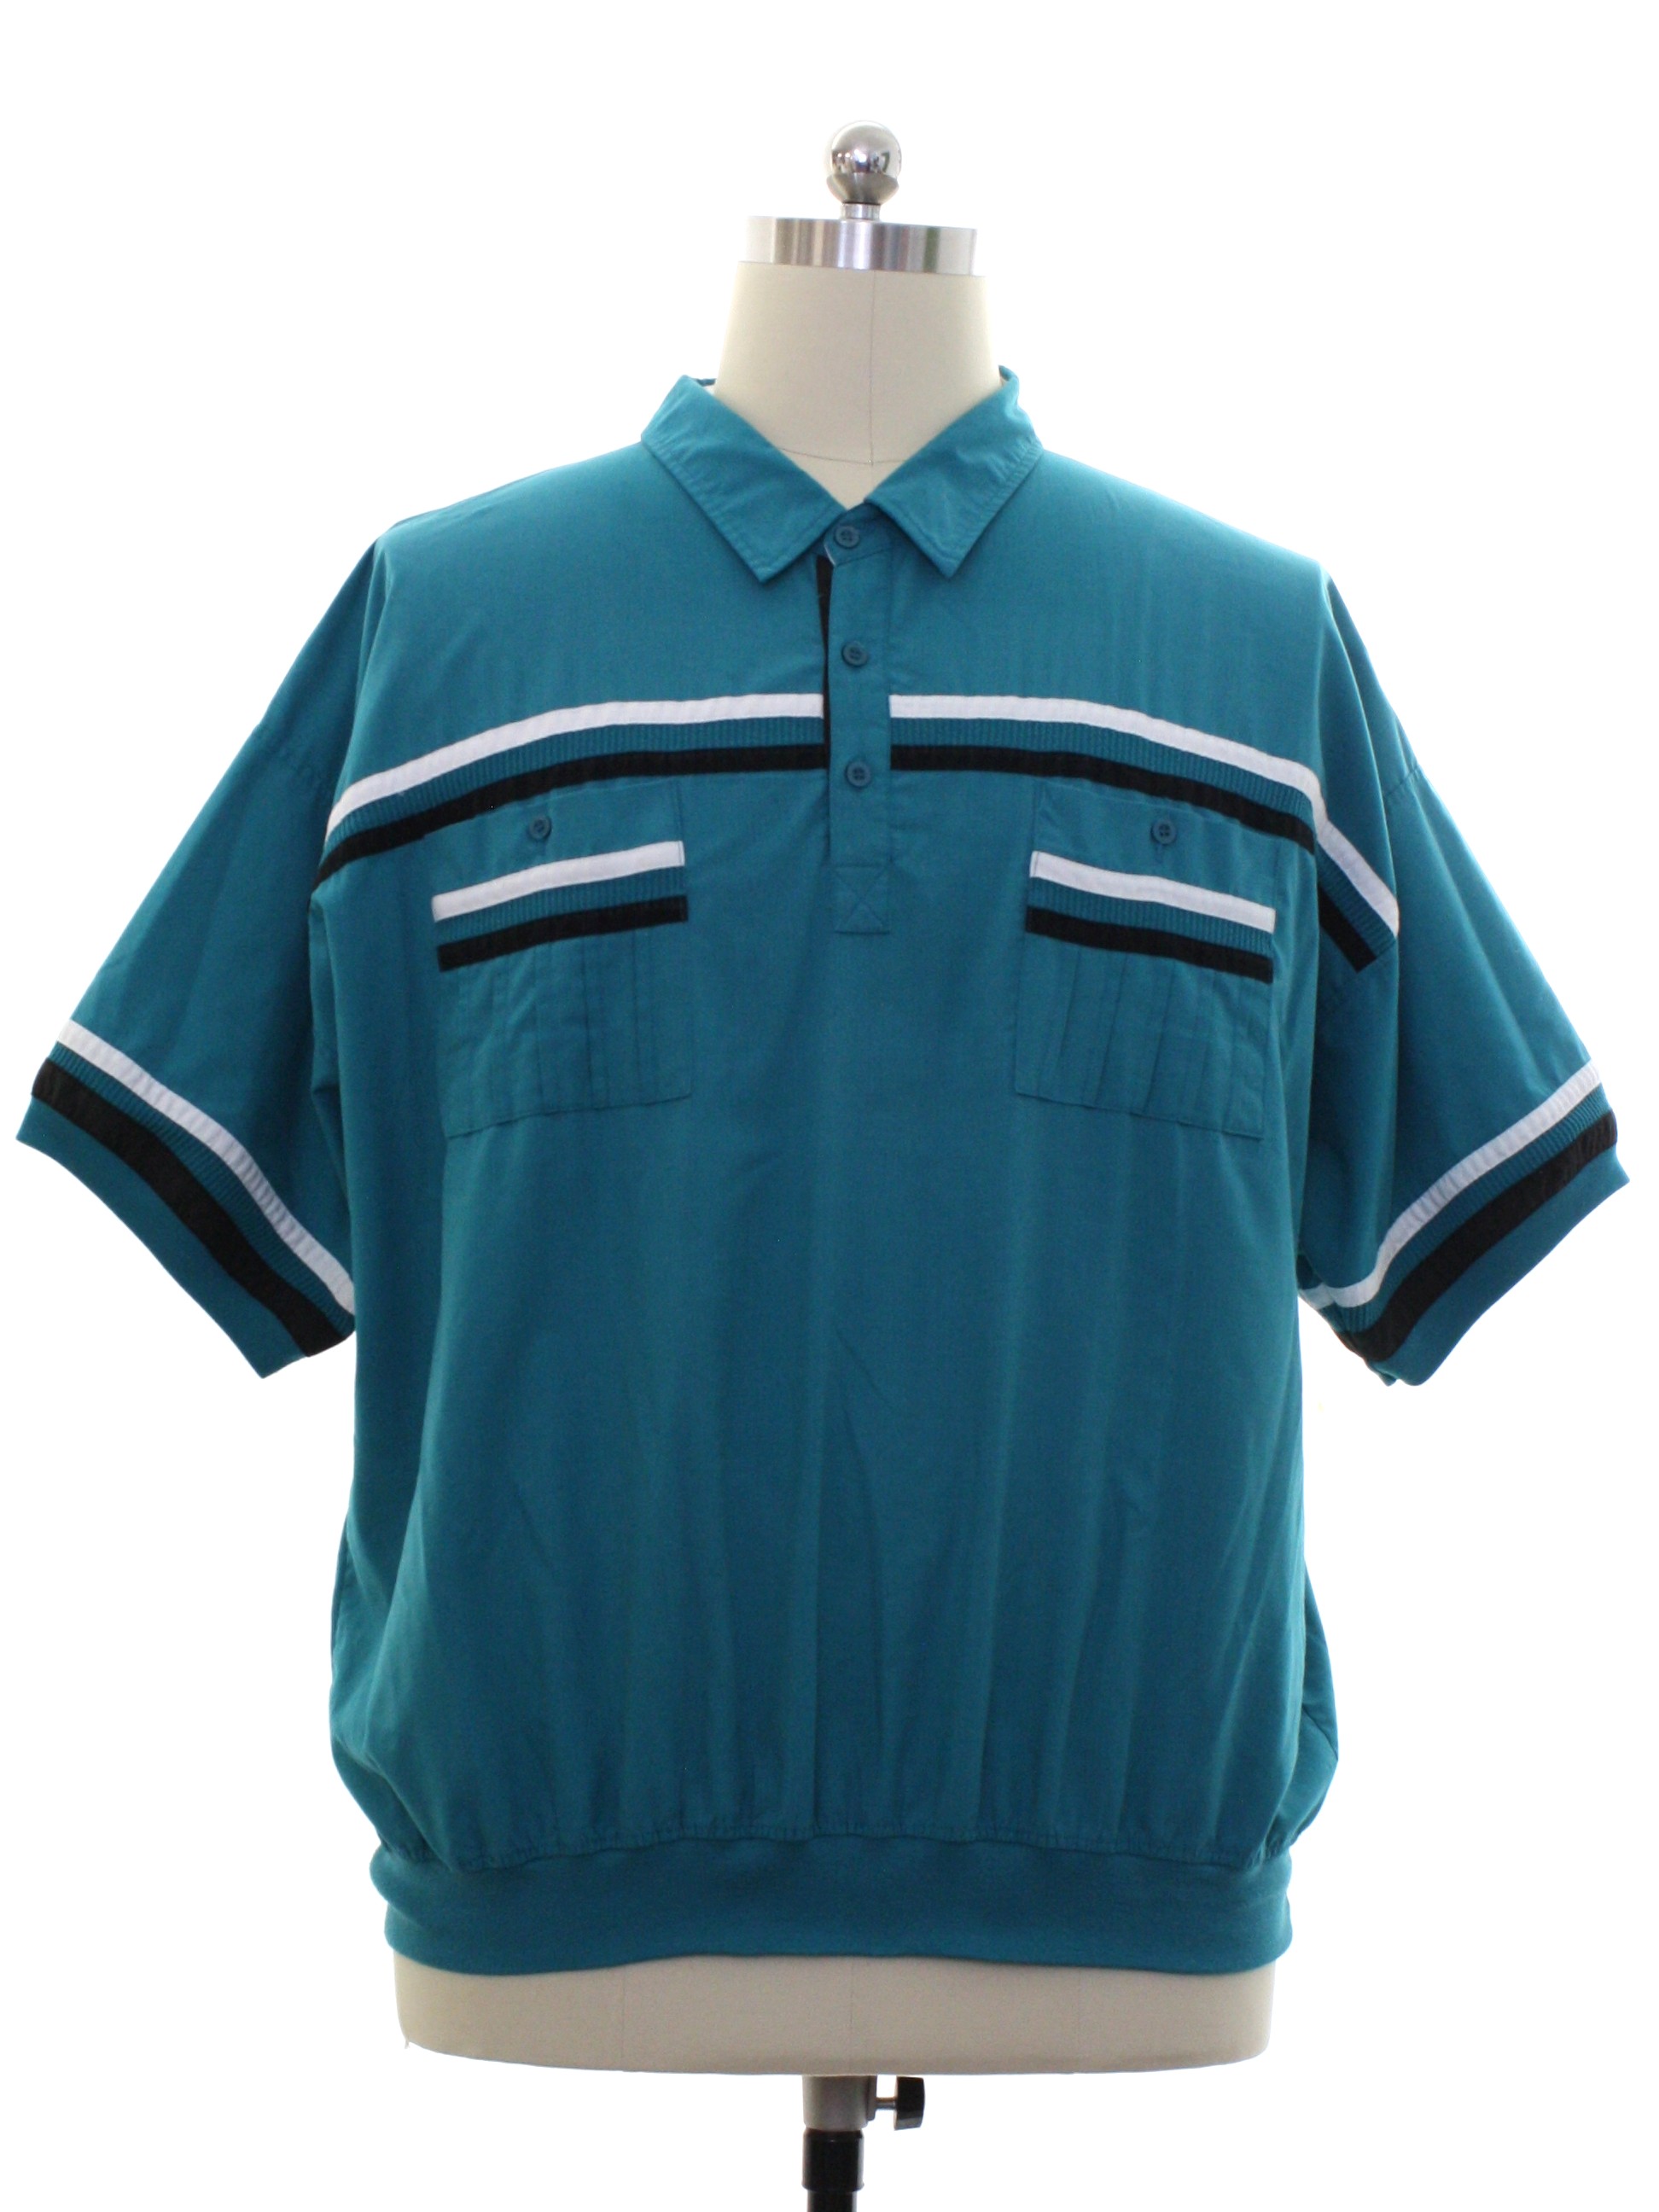 Retro 80s Shirt (Big Al) : Late 80s -Big Al- Mens teal background ...